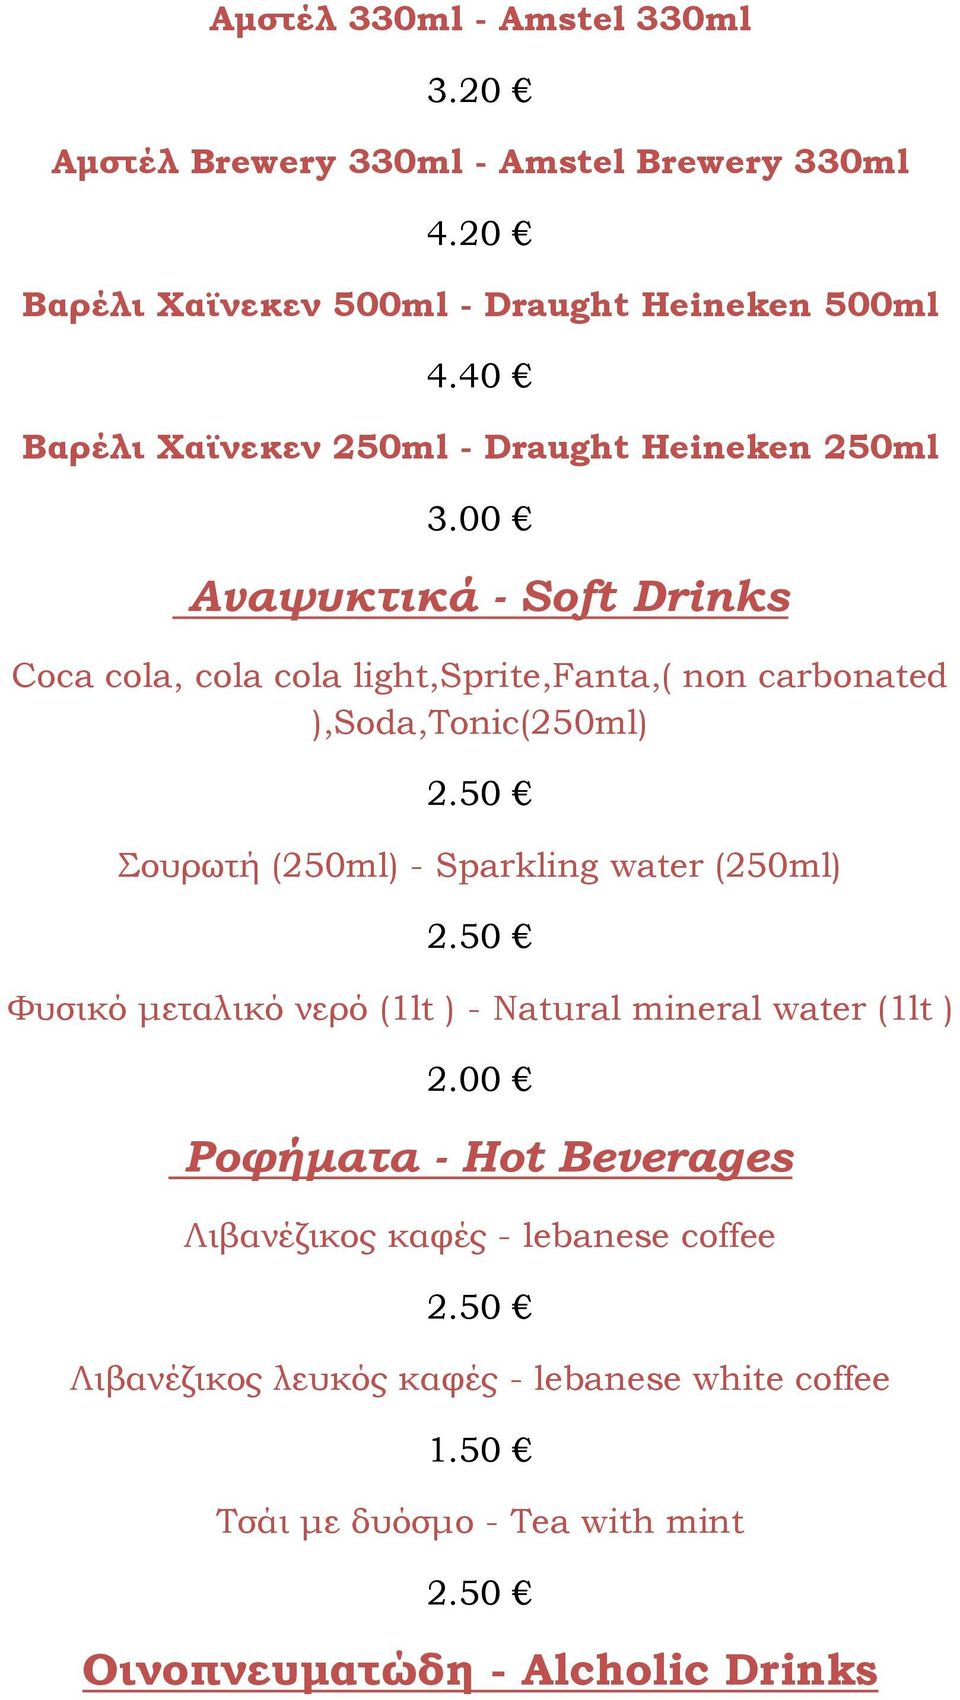 00 Αναψυκτικά - Soft Drinks Coca cola, cola cola light,sprite,fanta,( non carbonated ),Soda,Tonic(250ml) 2.